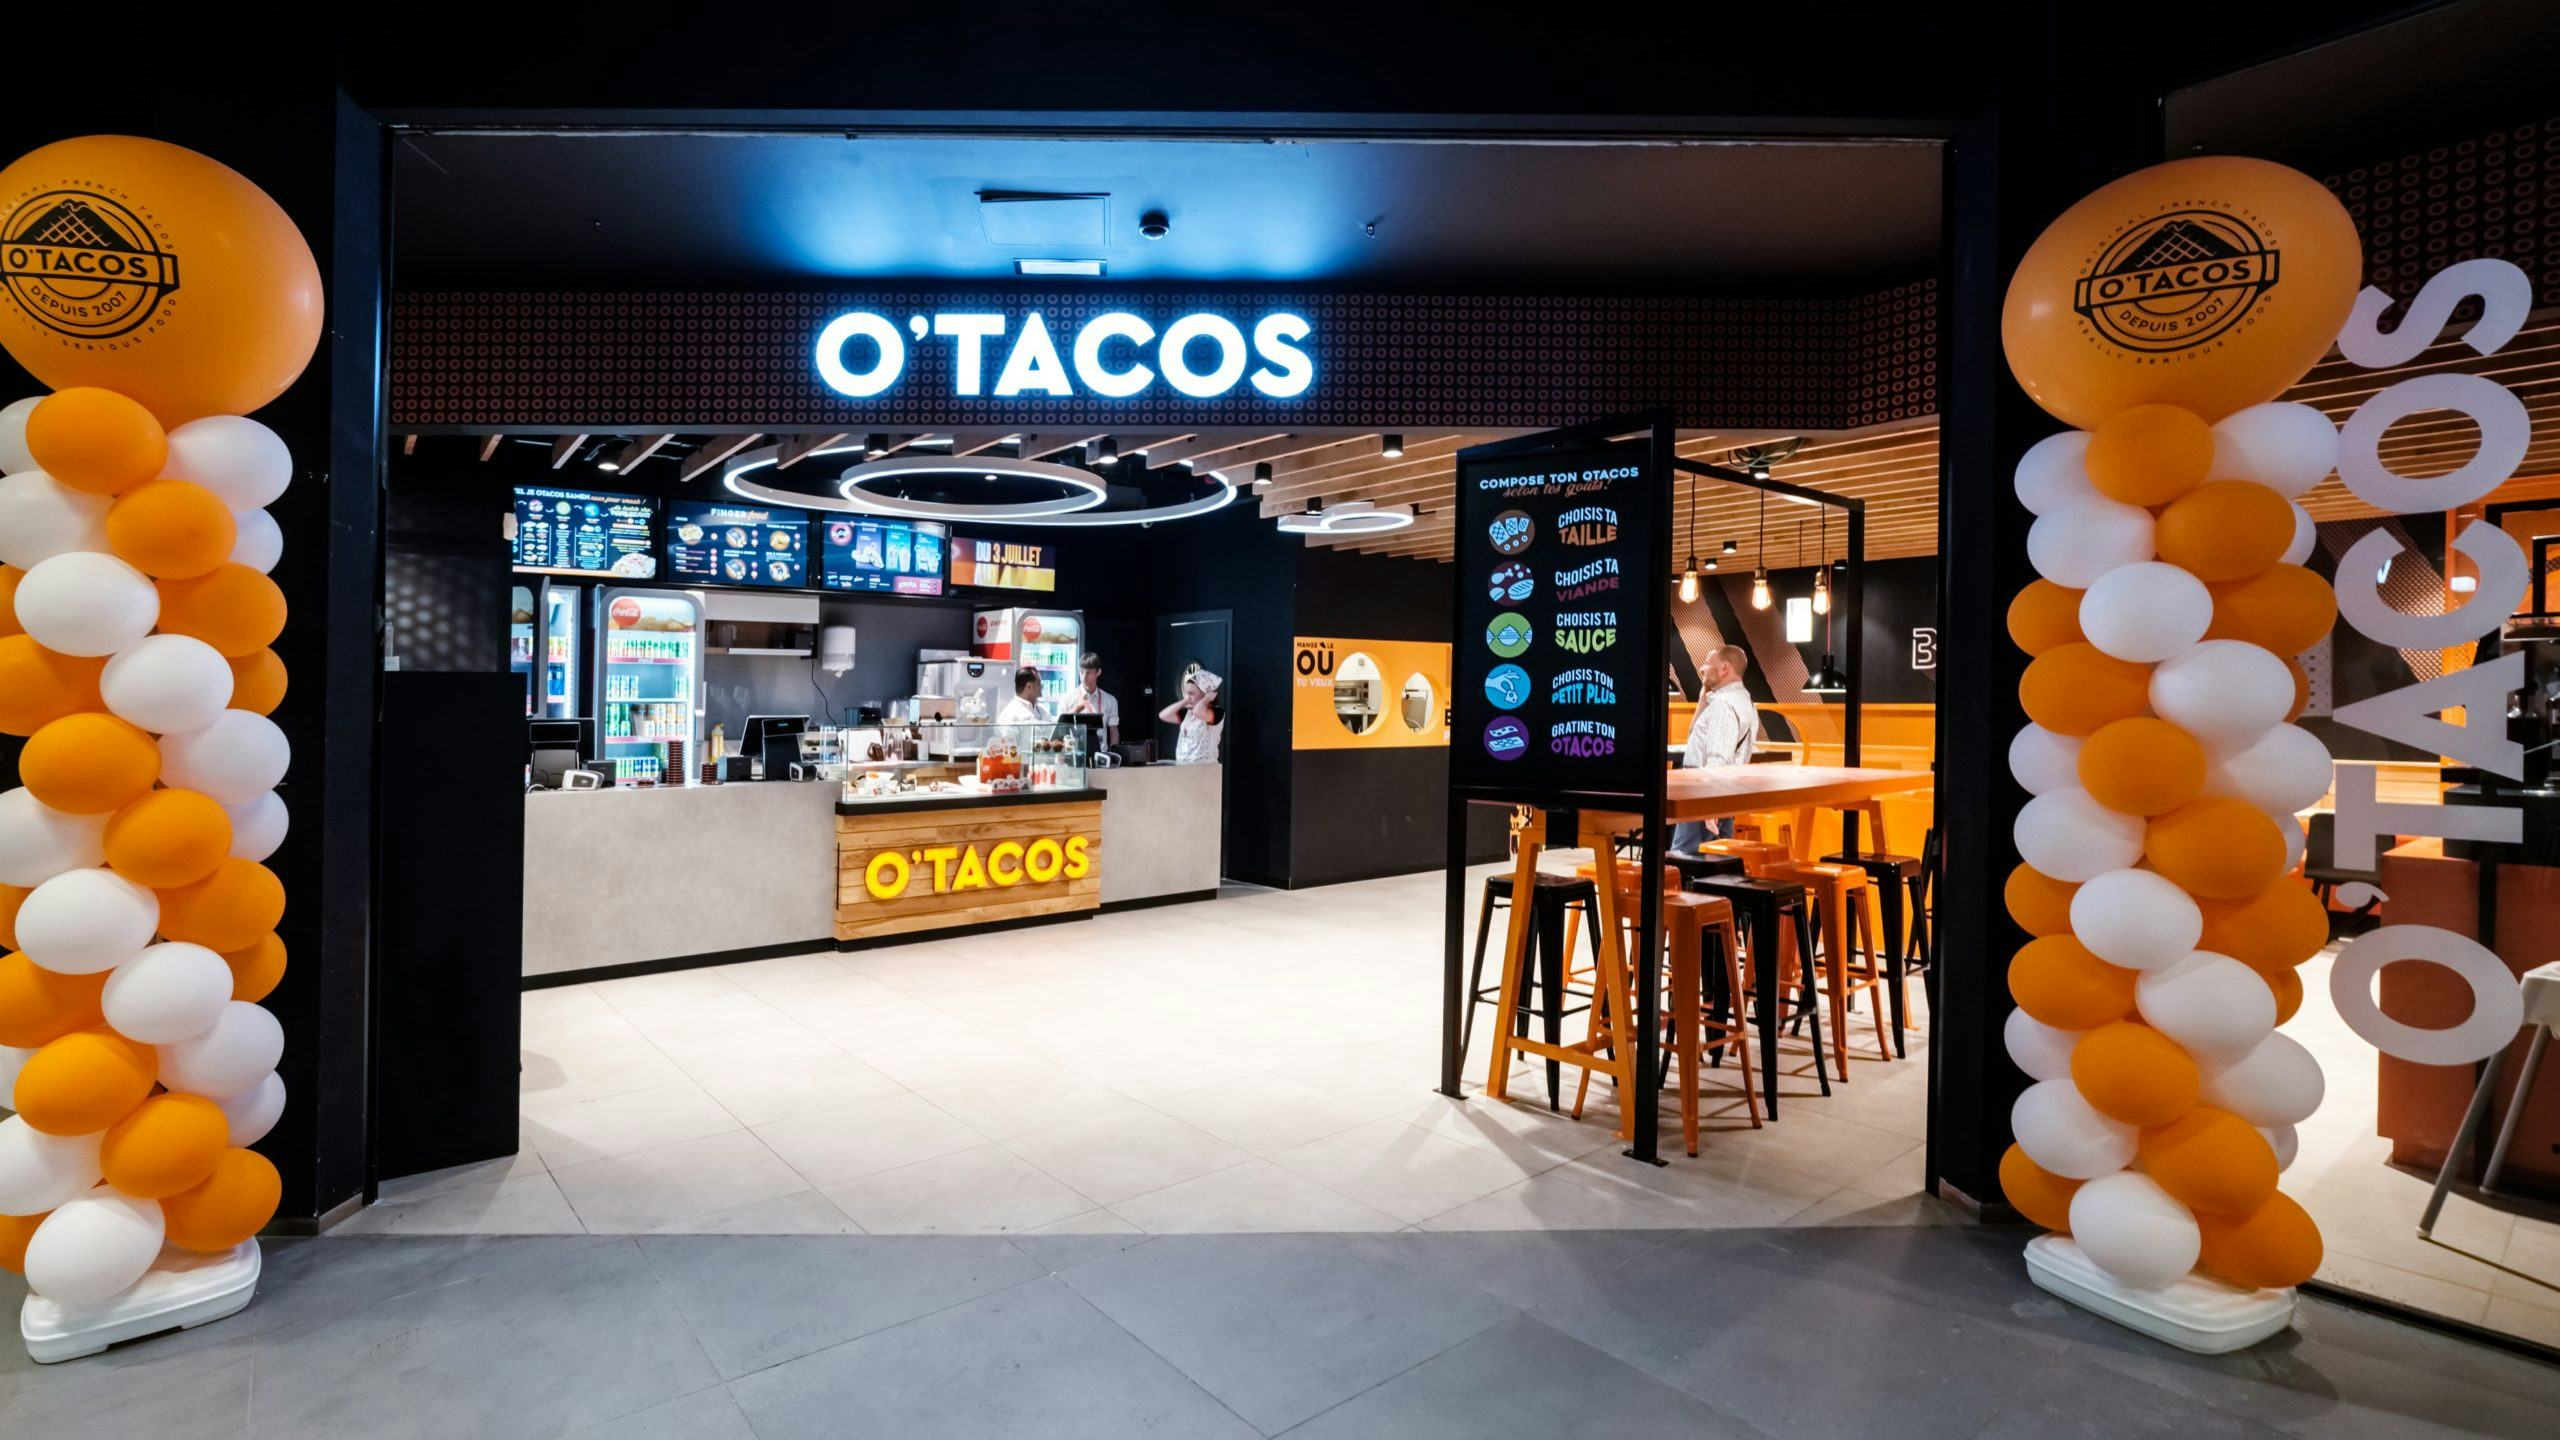 Franse tacoketen O'Tacos heeft ambitie op de Nederlandse markt